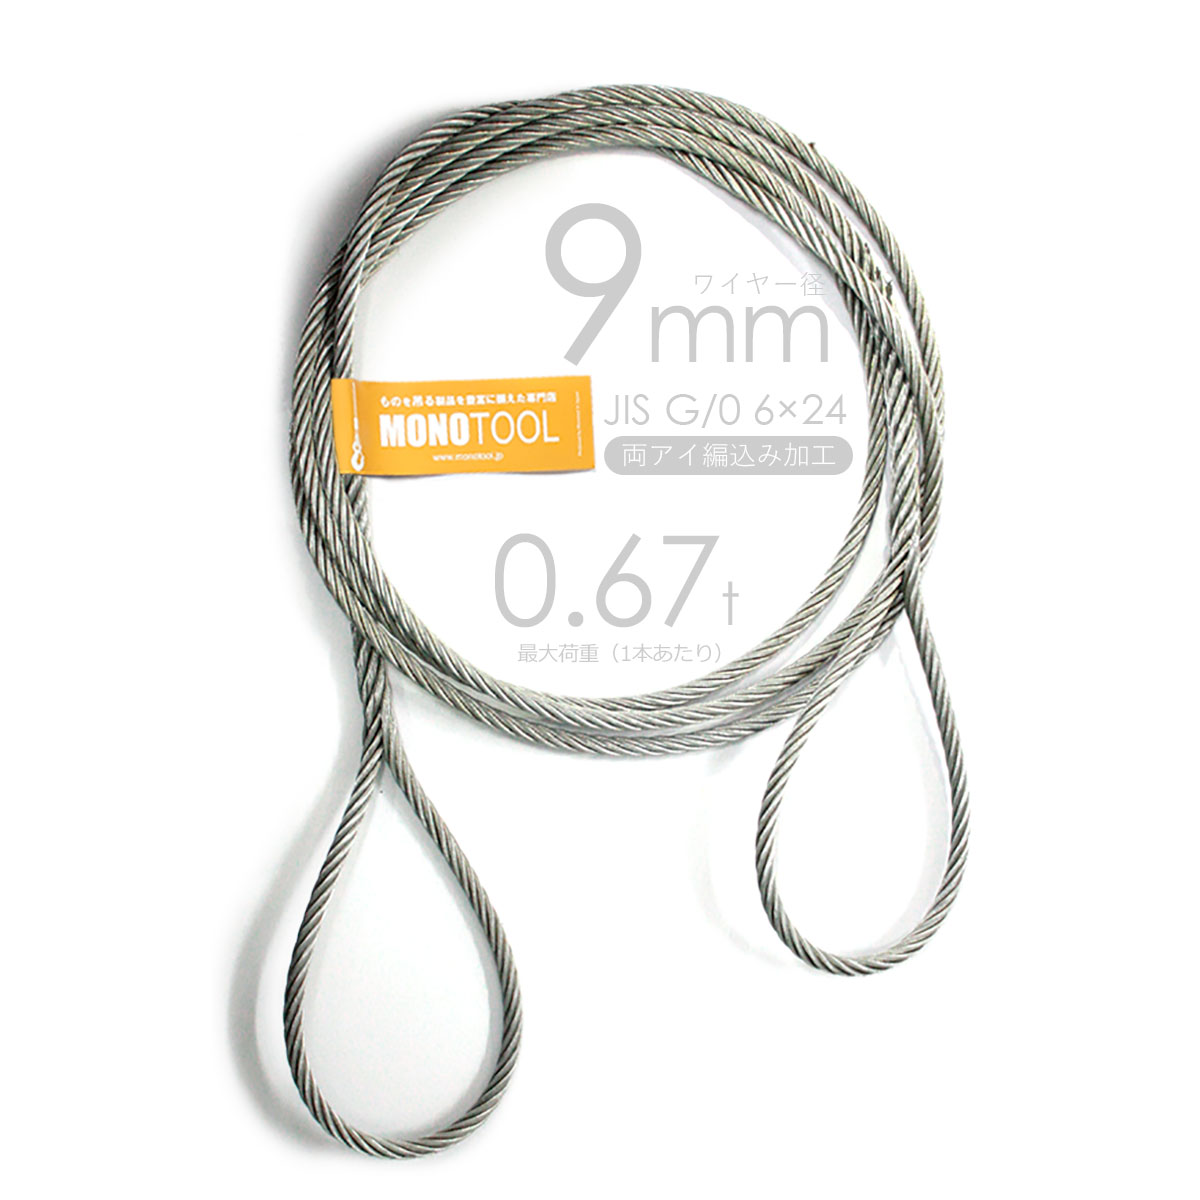 編み込み・フレミッシュ加工 JISメッキ(G/O) 9mm(3分) 玉掛ワイヤロープ 2本組